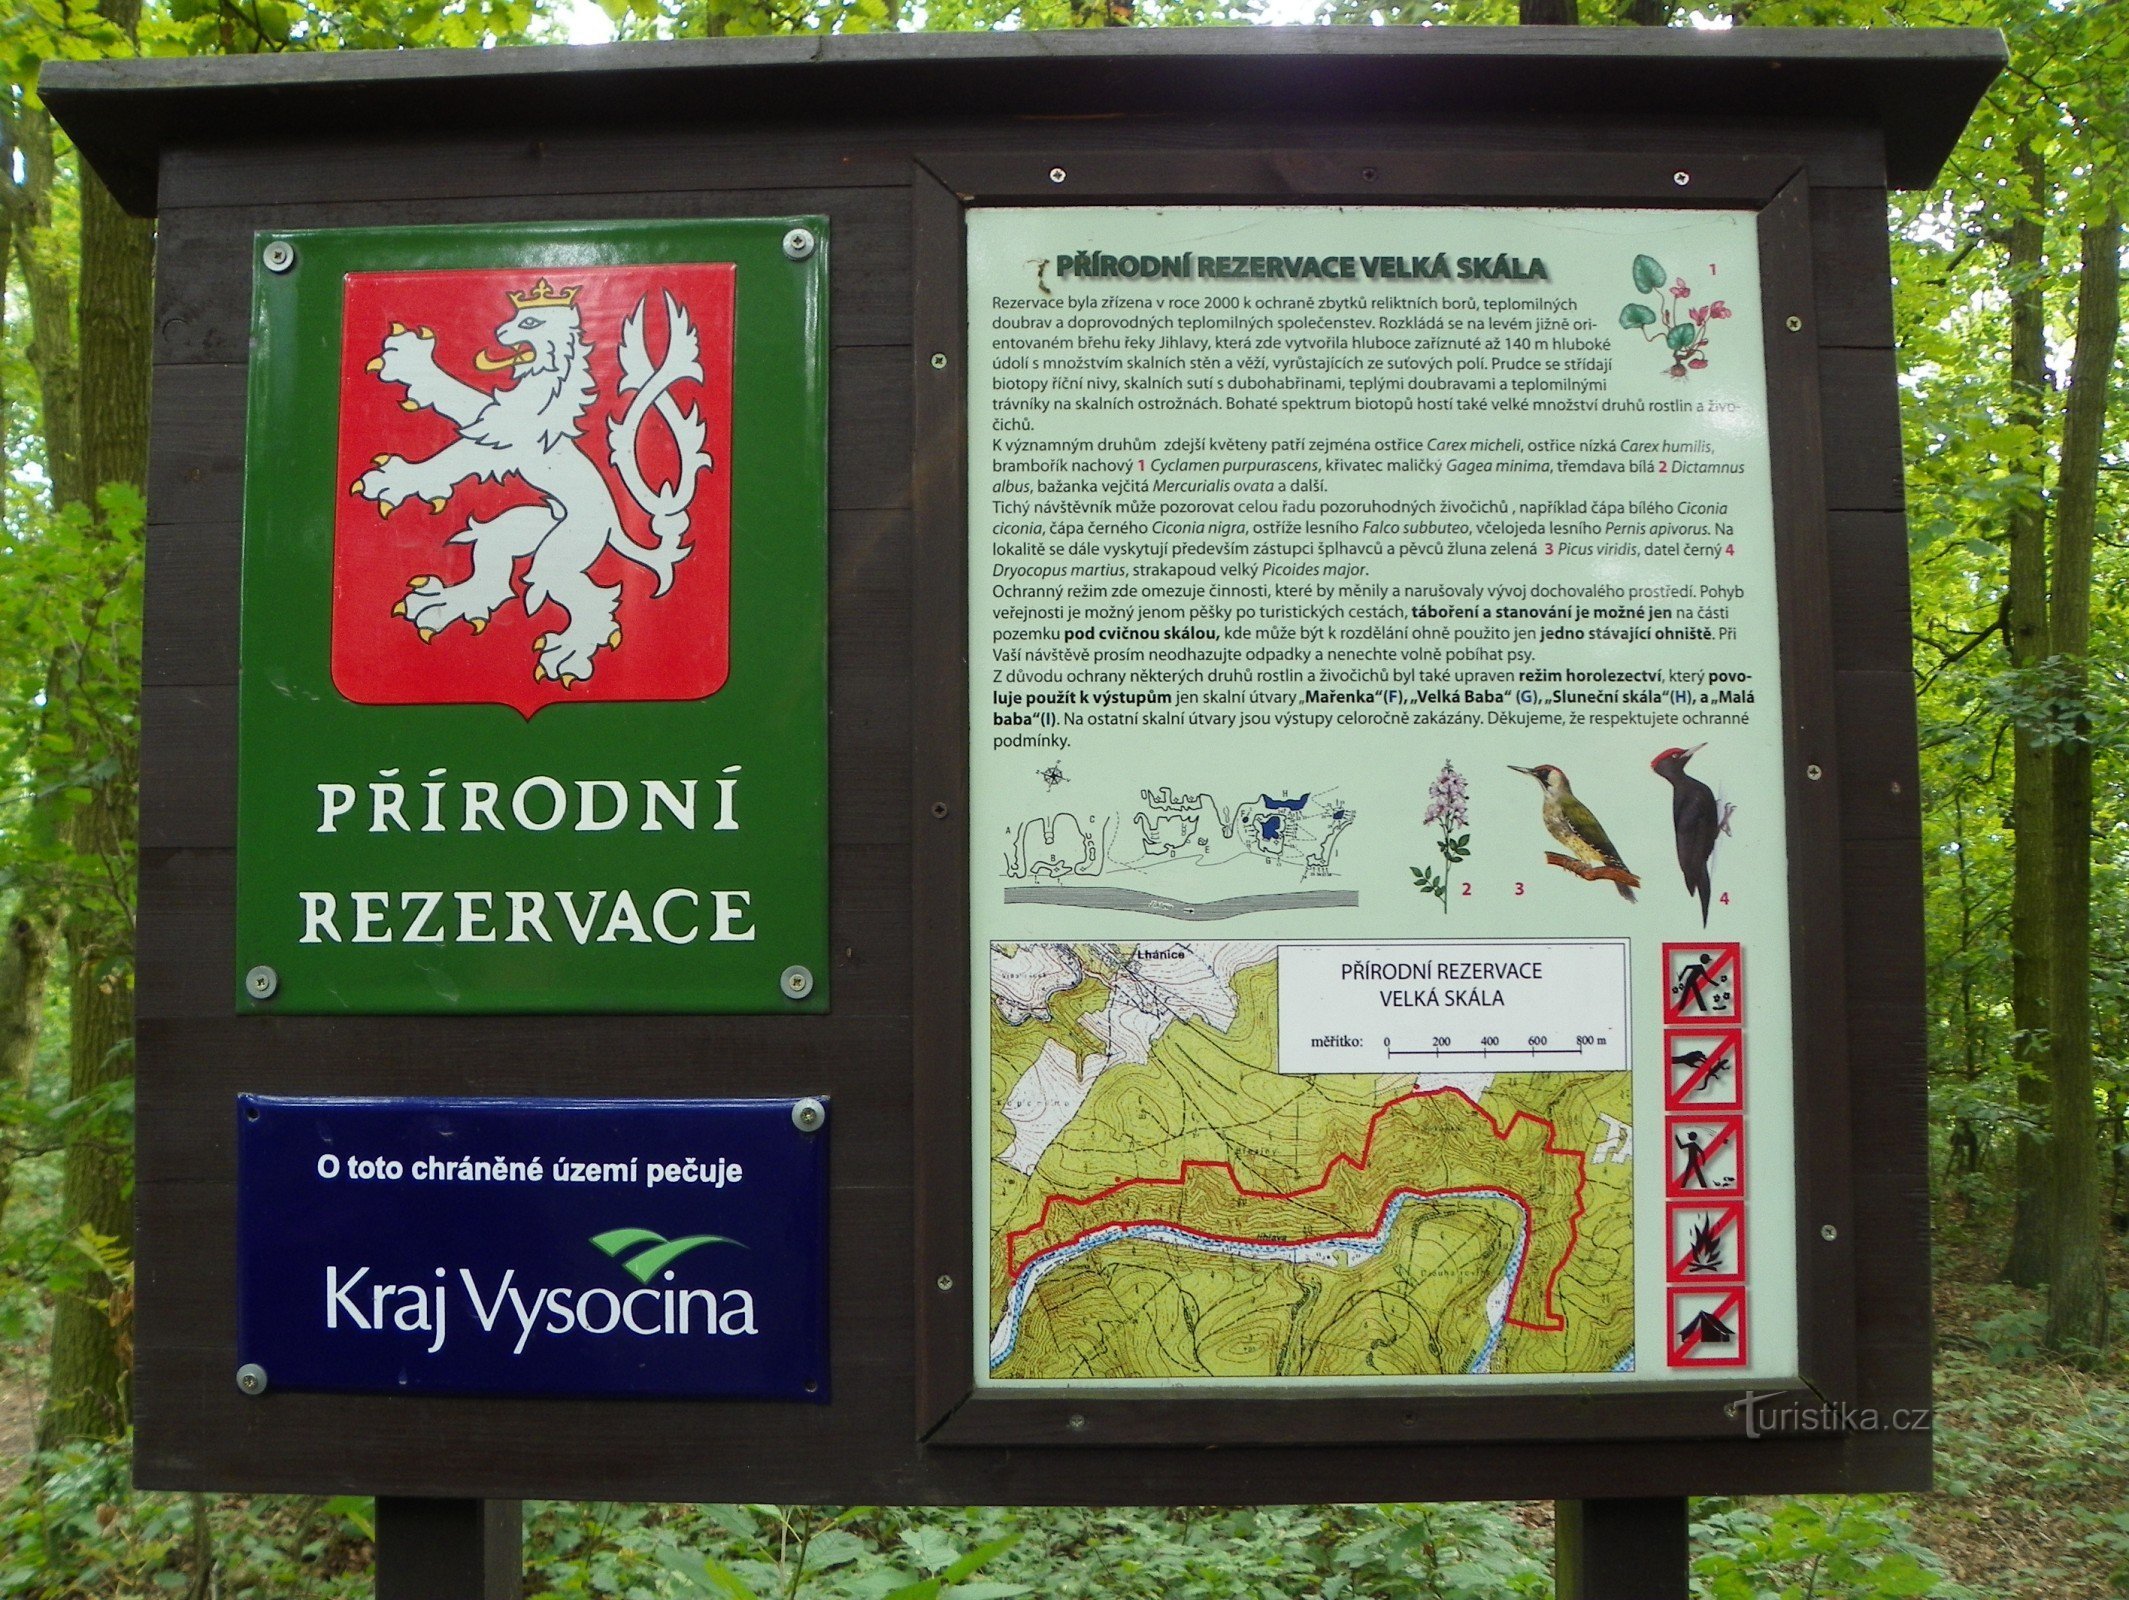 Інформаційне табло на повороті на Velká skála